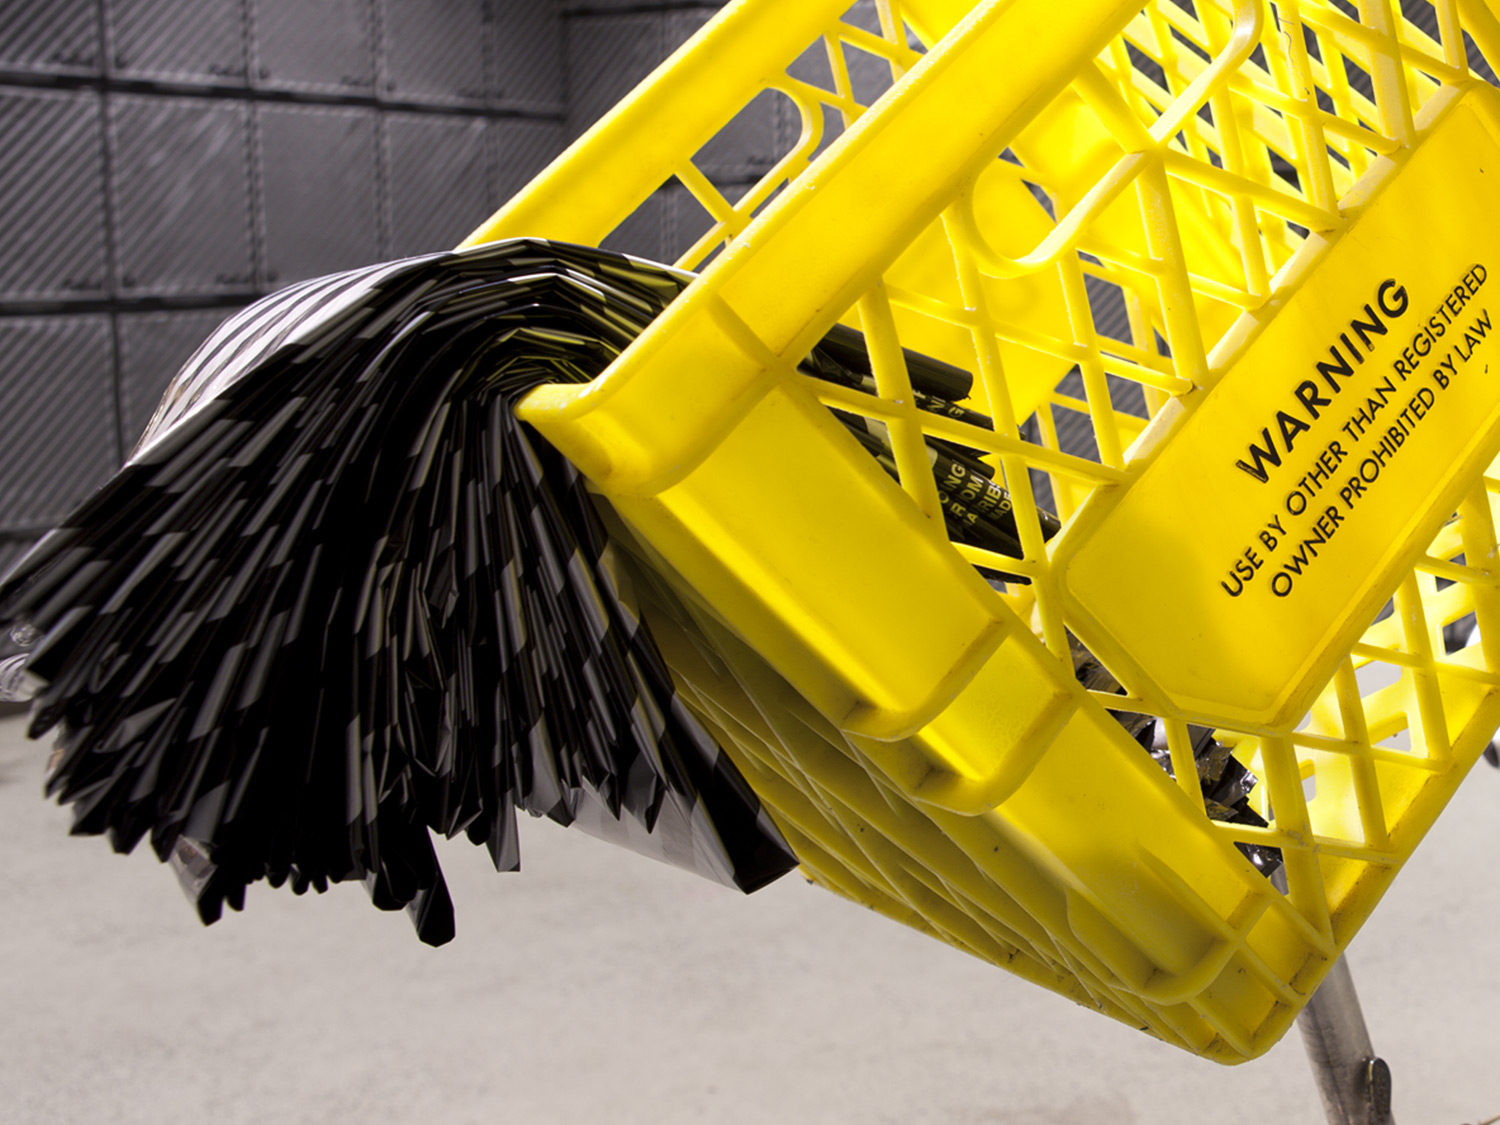  Installation detail, Dairy Basket, Lagmitz plastic shopping bag, Bicycle&nbsp; 